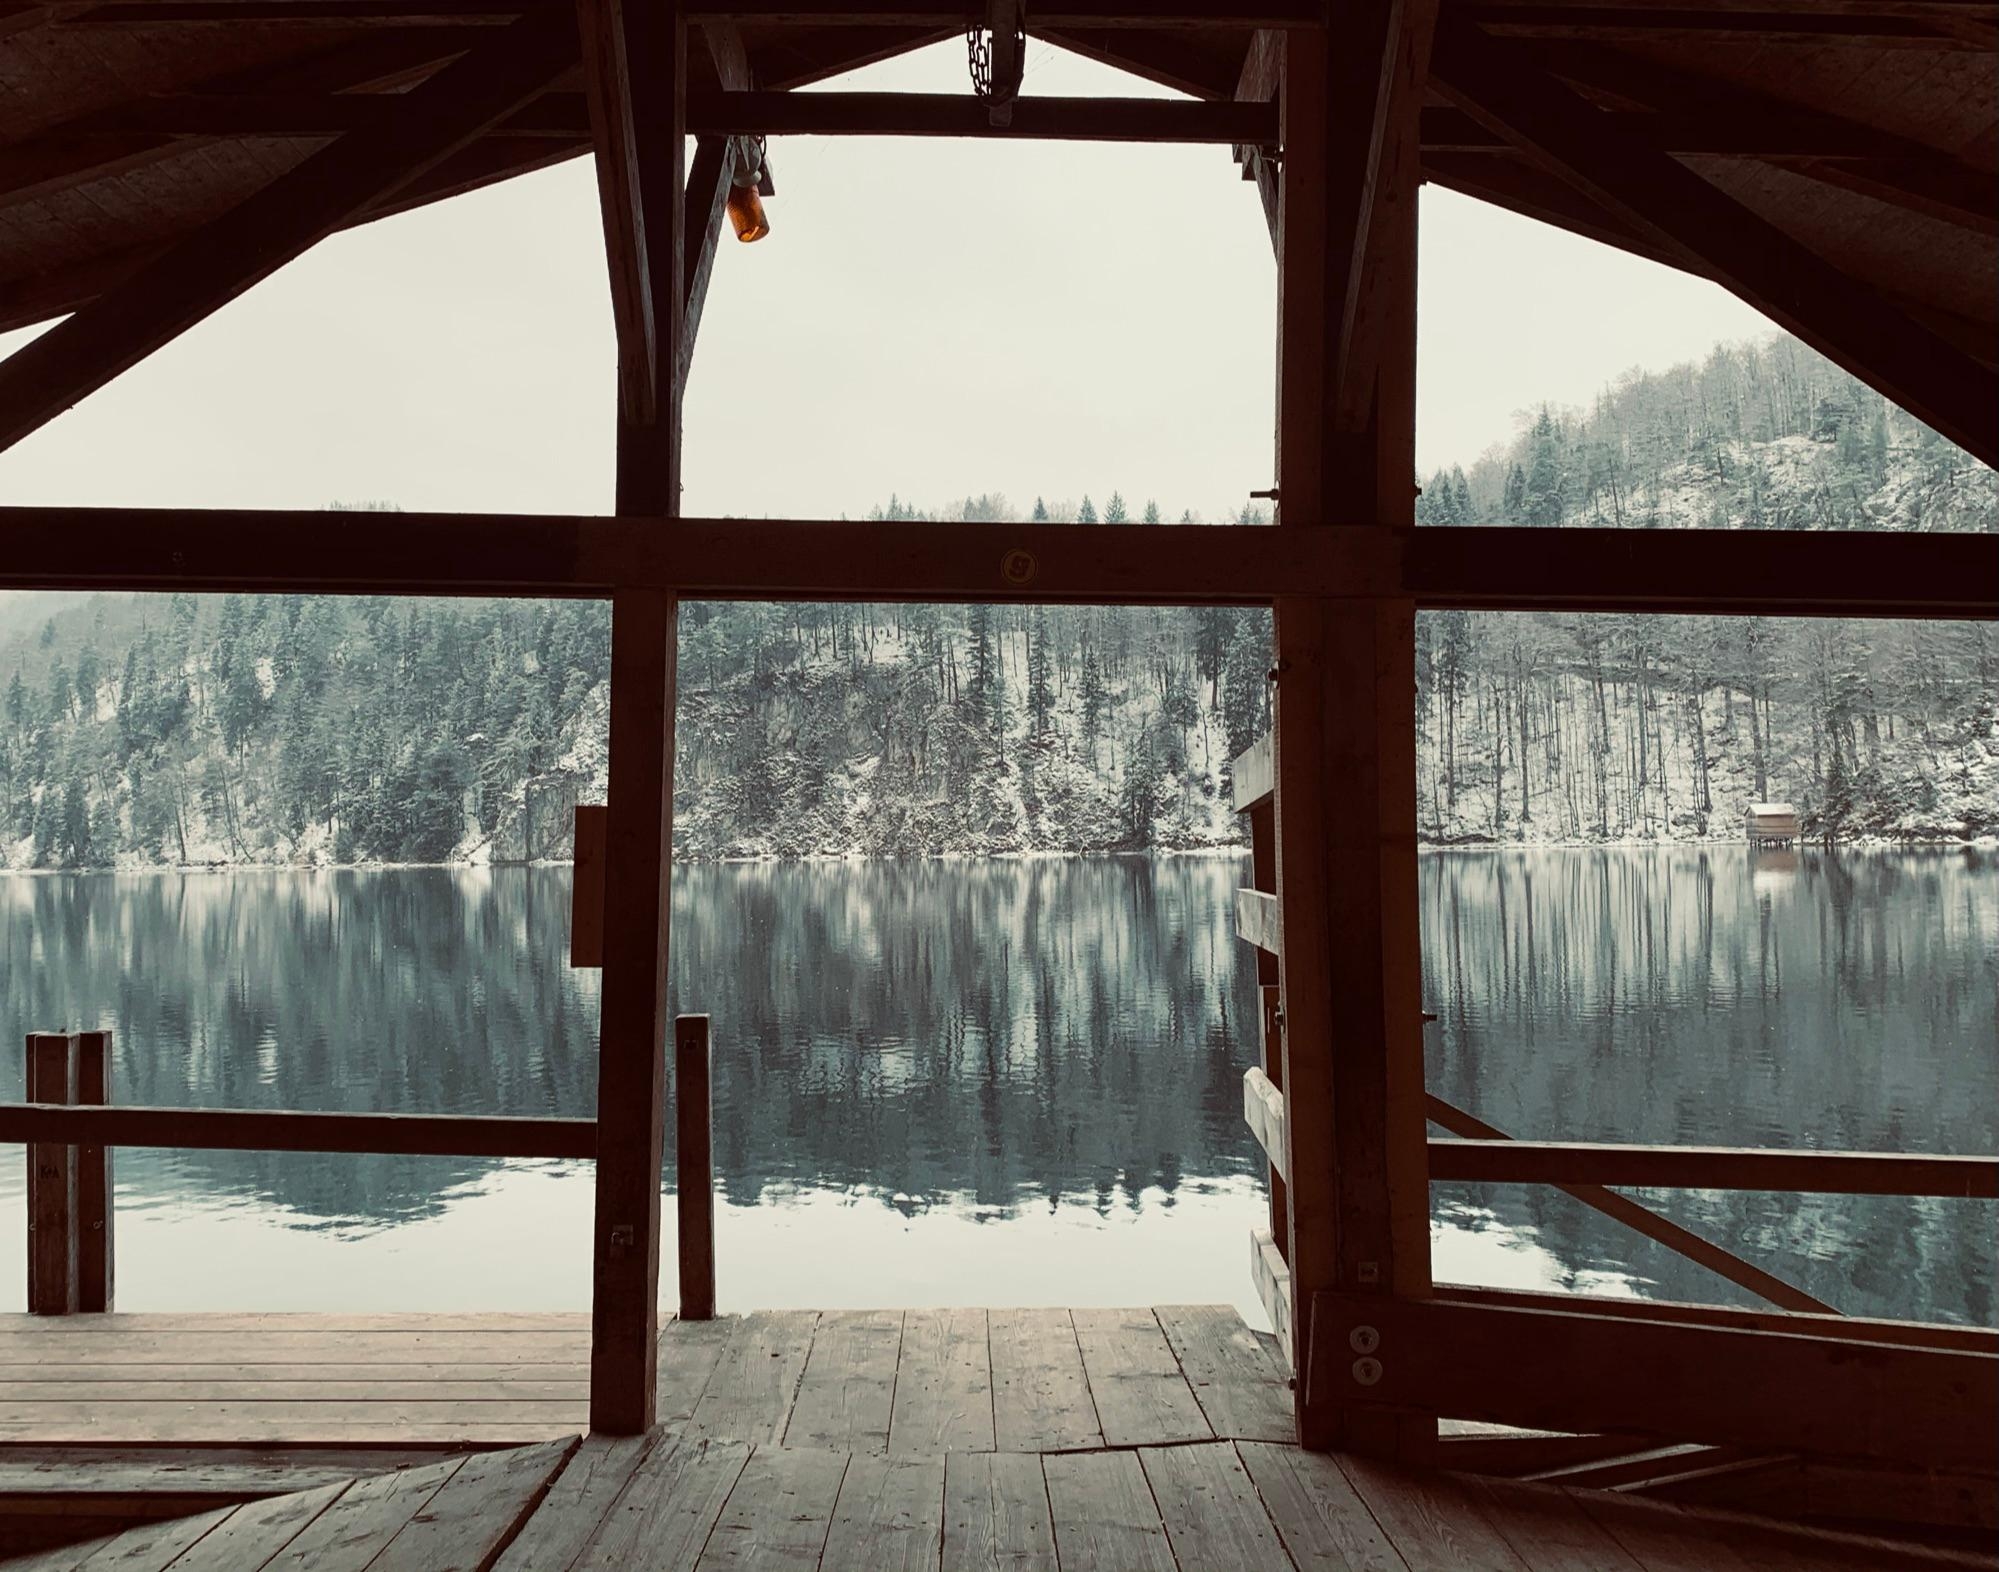 Das Haus am See.. da würd ich s mir doch glatt gemütlich machen bei dem Ausblick #winterwonderland #stille